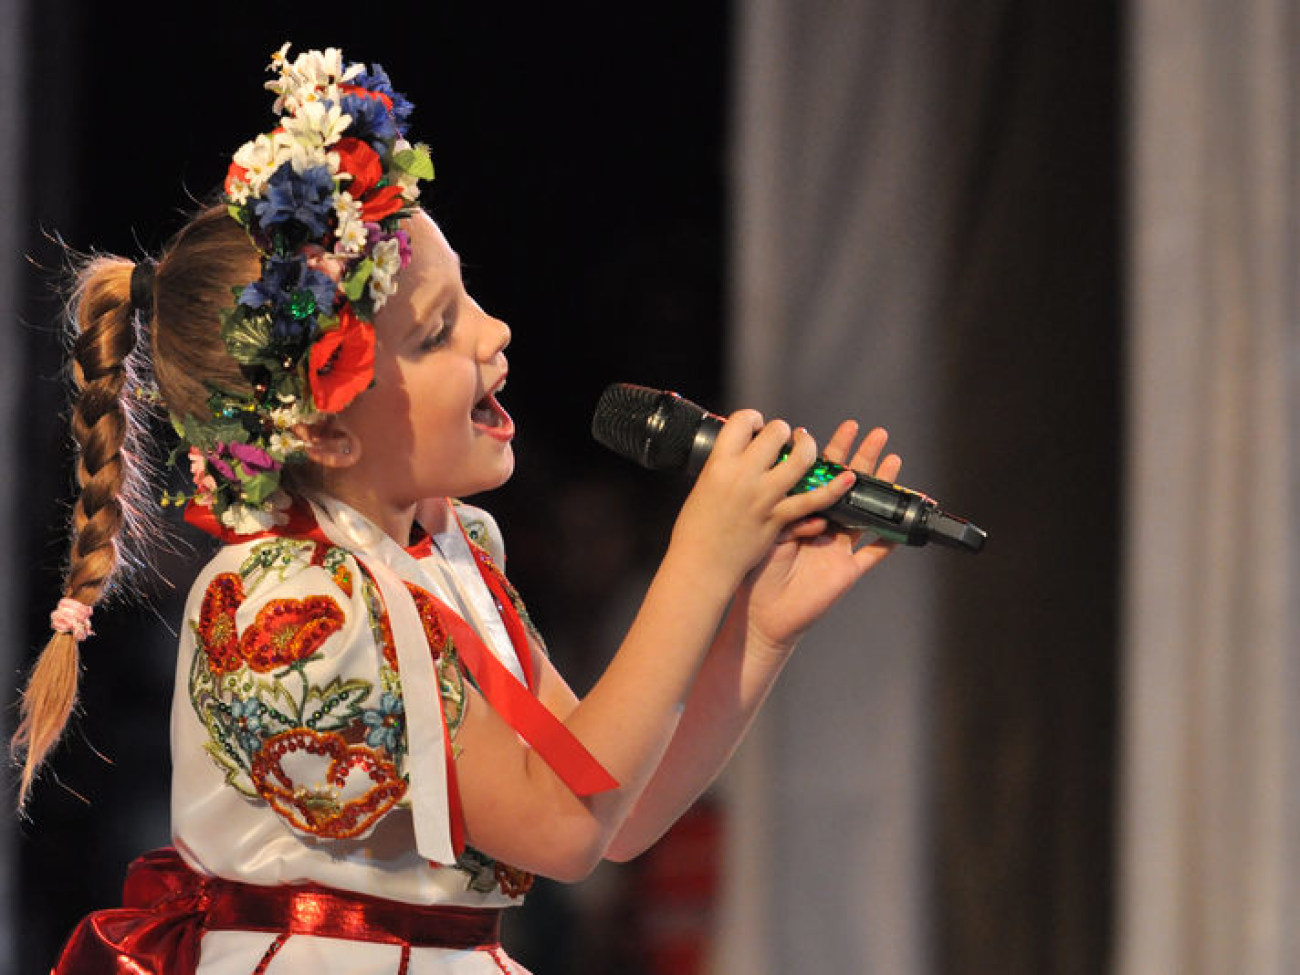 Киев начал общегородской праздник «Дети + Лето», 29 мая 2013г.